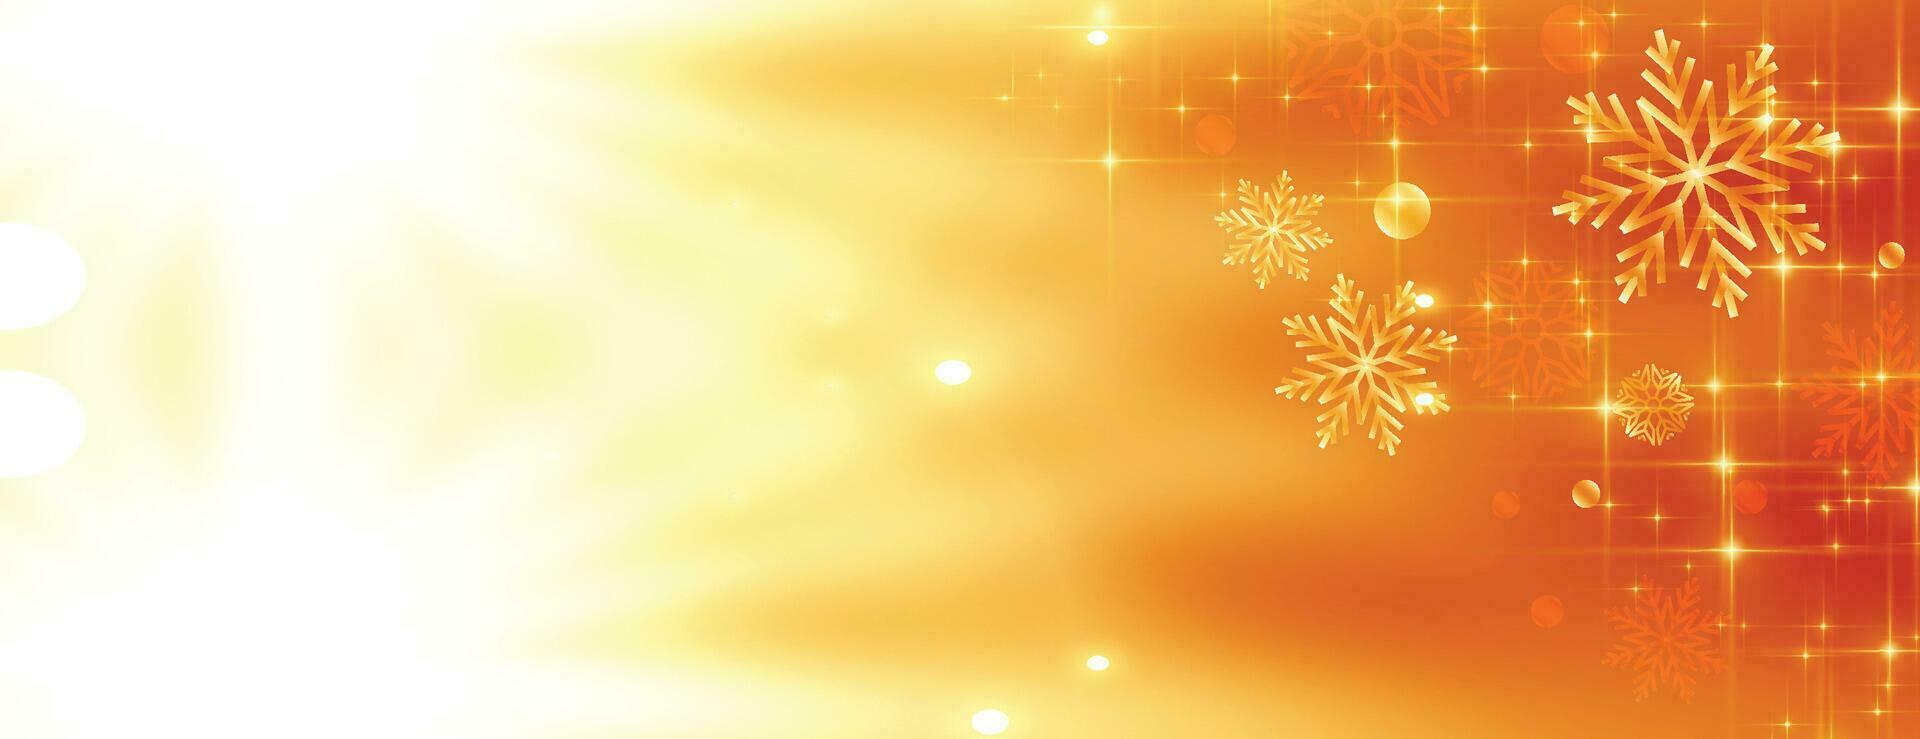 vrolijk kerstfeest en een gelukkig nieuwjaar. xmas achtergrond met poinsettia, sneeuwvlokken, ster en ballen ontwerp. vector